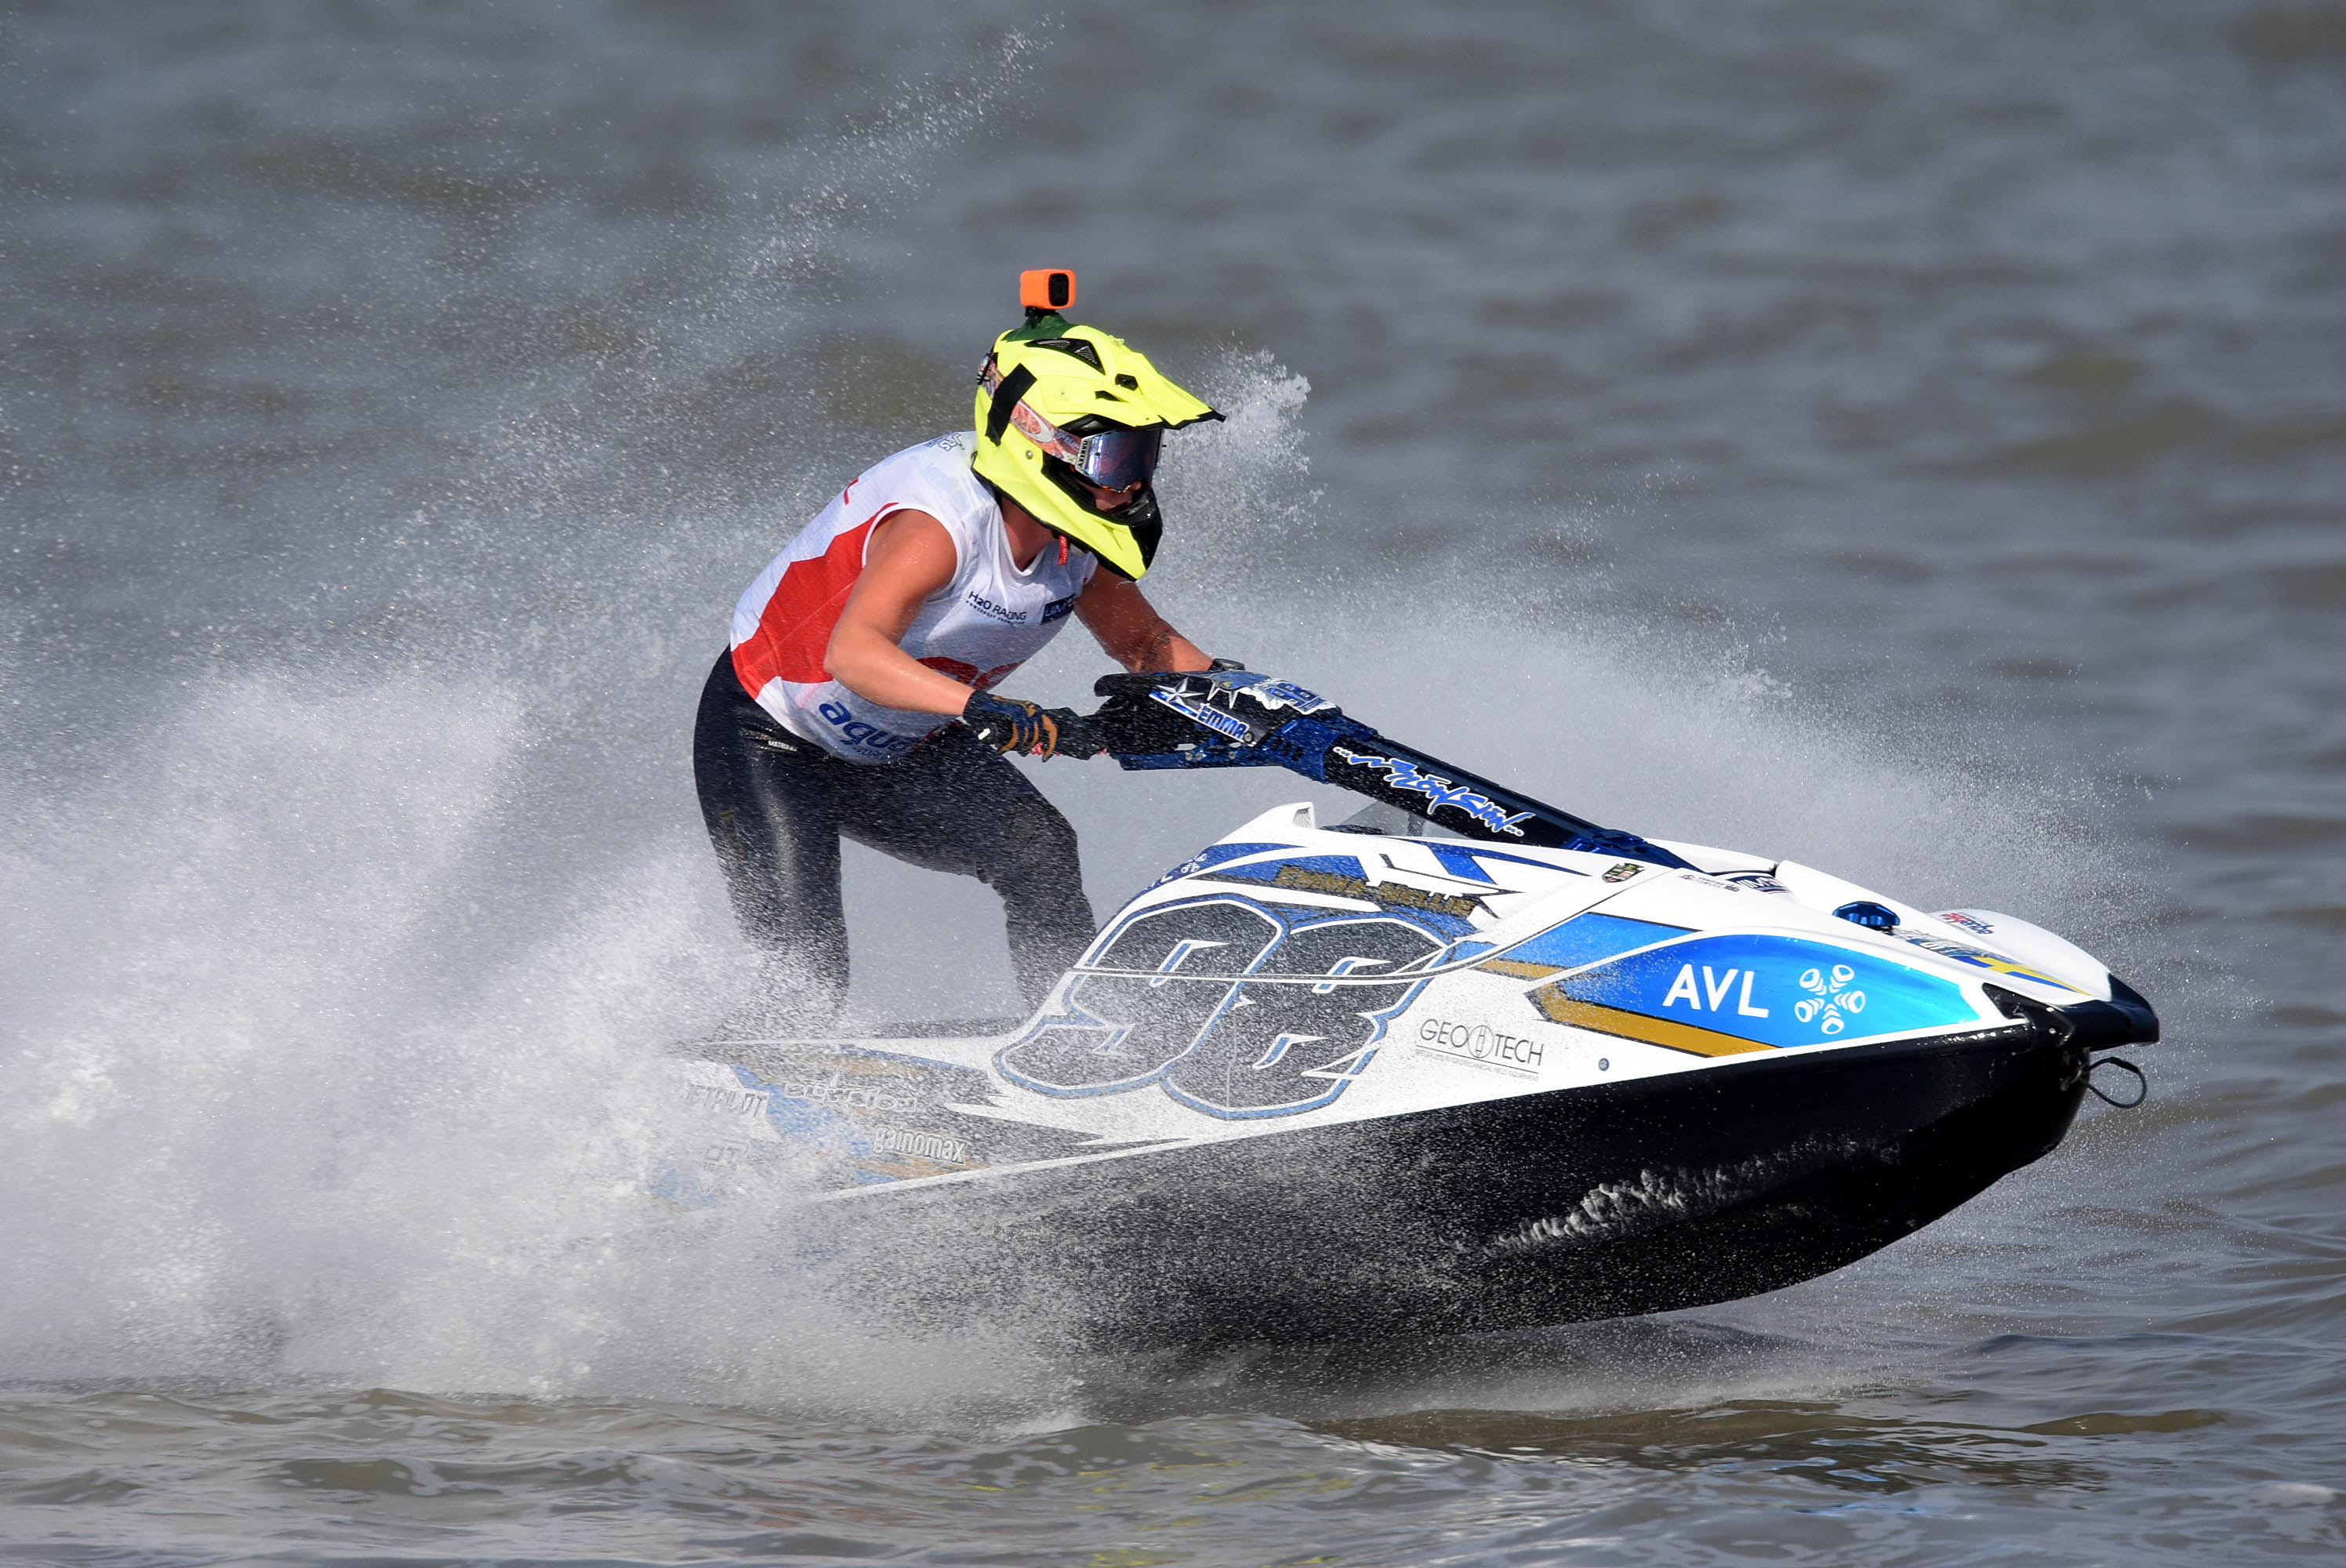 2019世界水上摩托锦标赛青岛站:女子立式竞速赛赛况